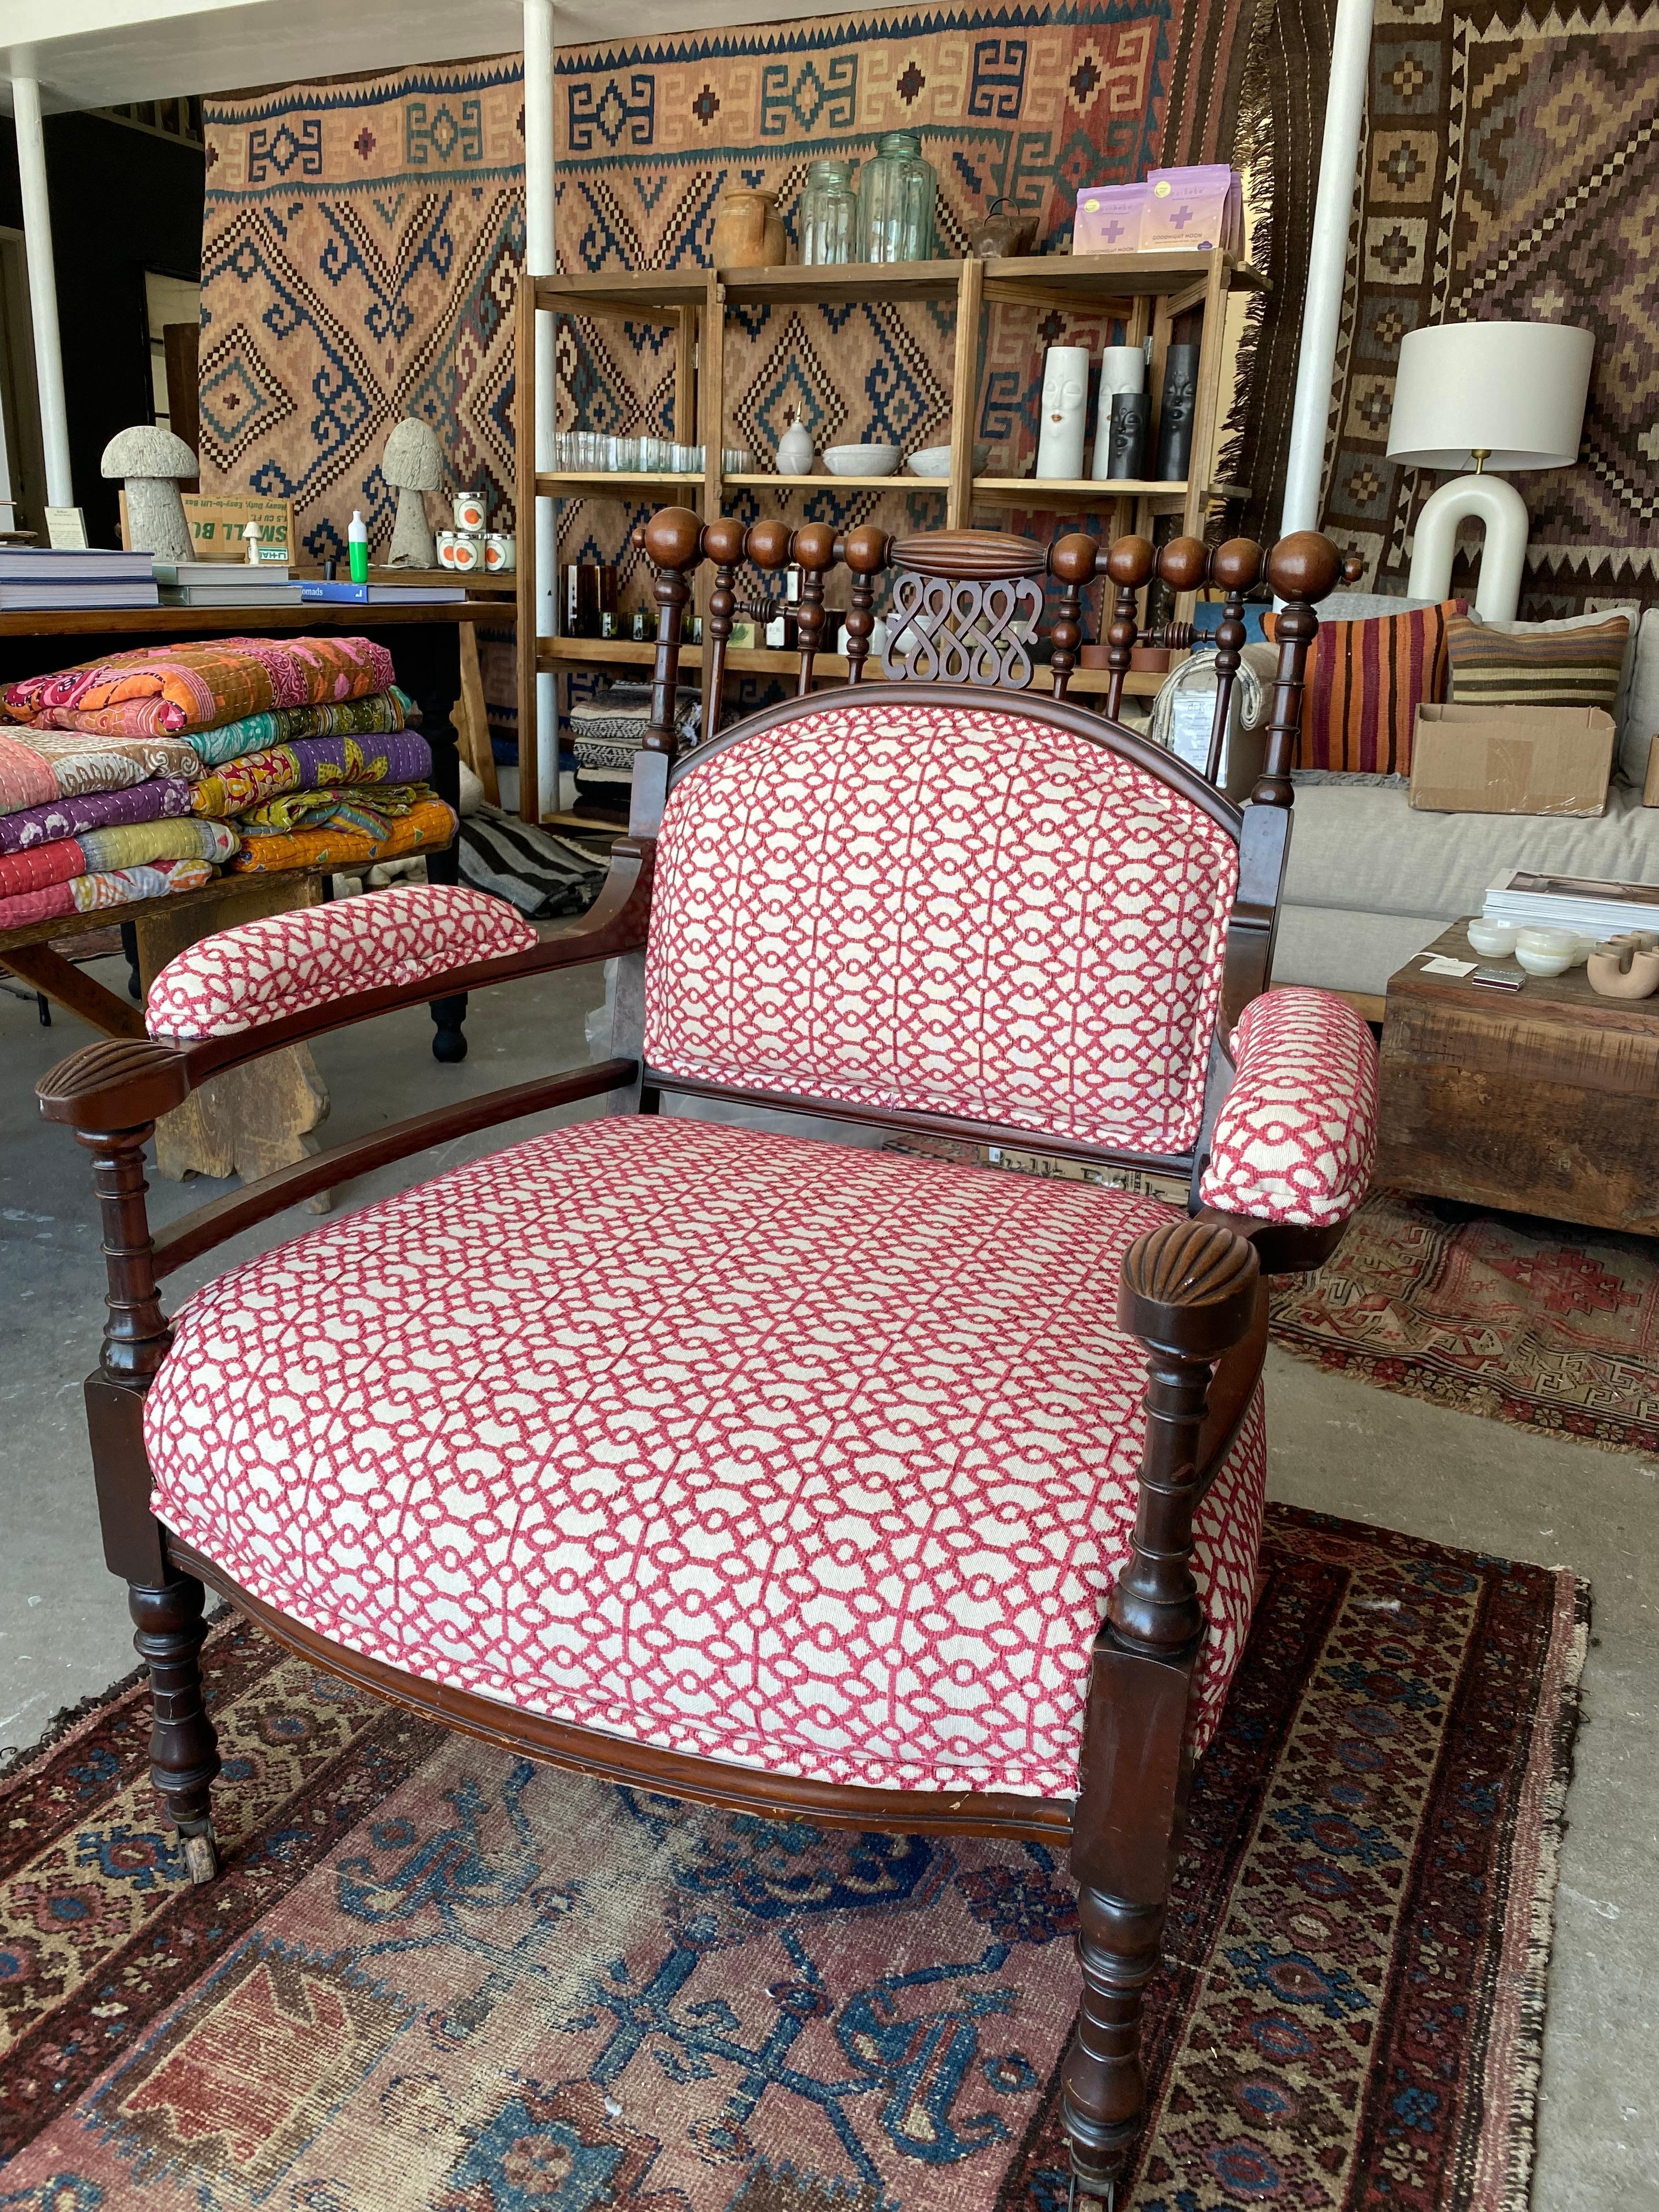 Il s'agit d'un fauteuil extrêmement rare de style colonial espagnol des années 1930 qui a été retapissé. Il est équipé de petites roues très pratiques qui permettent de le déplacer facilement, d'un magnifique bois d'origine, de détails étonnants sur